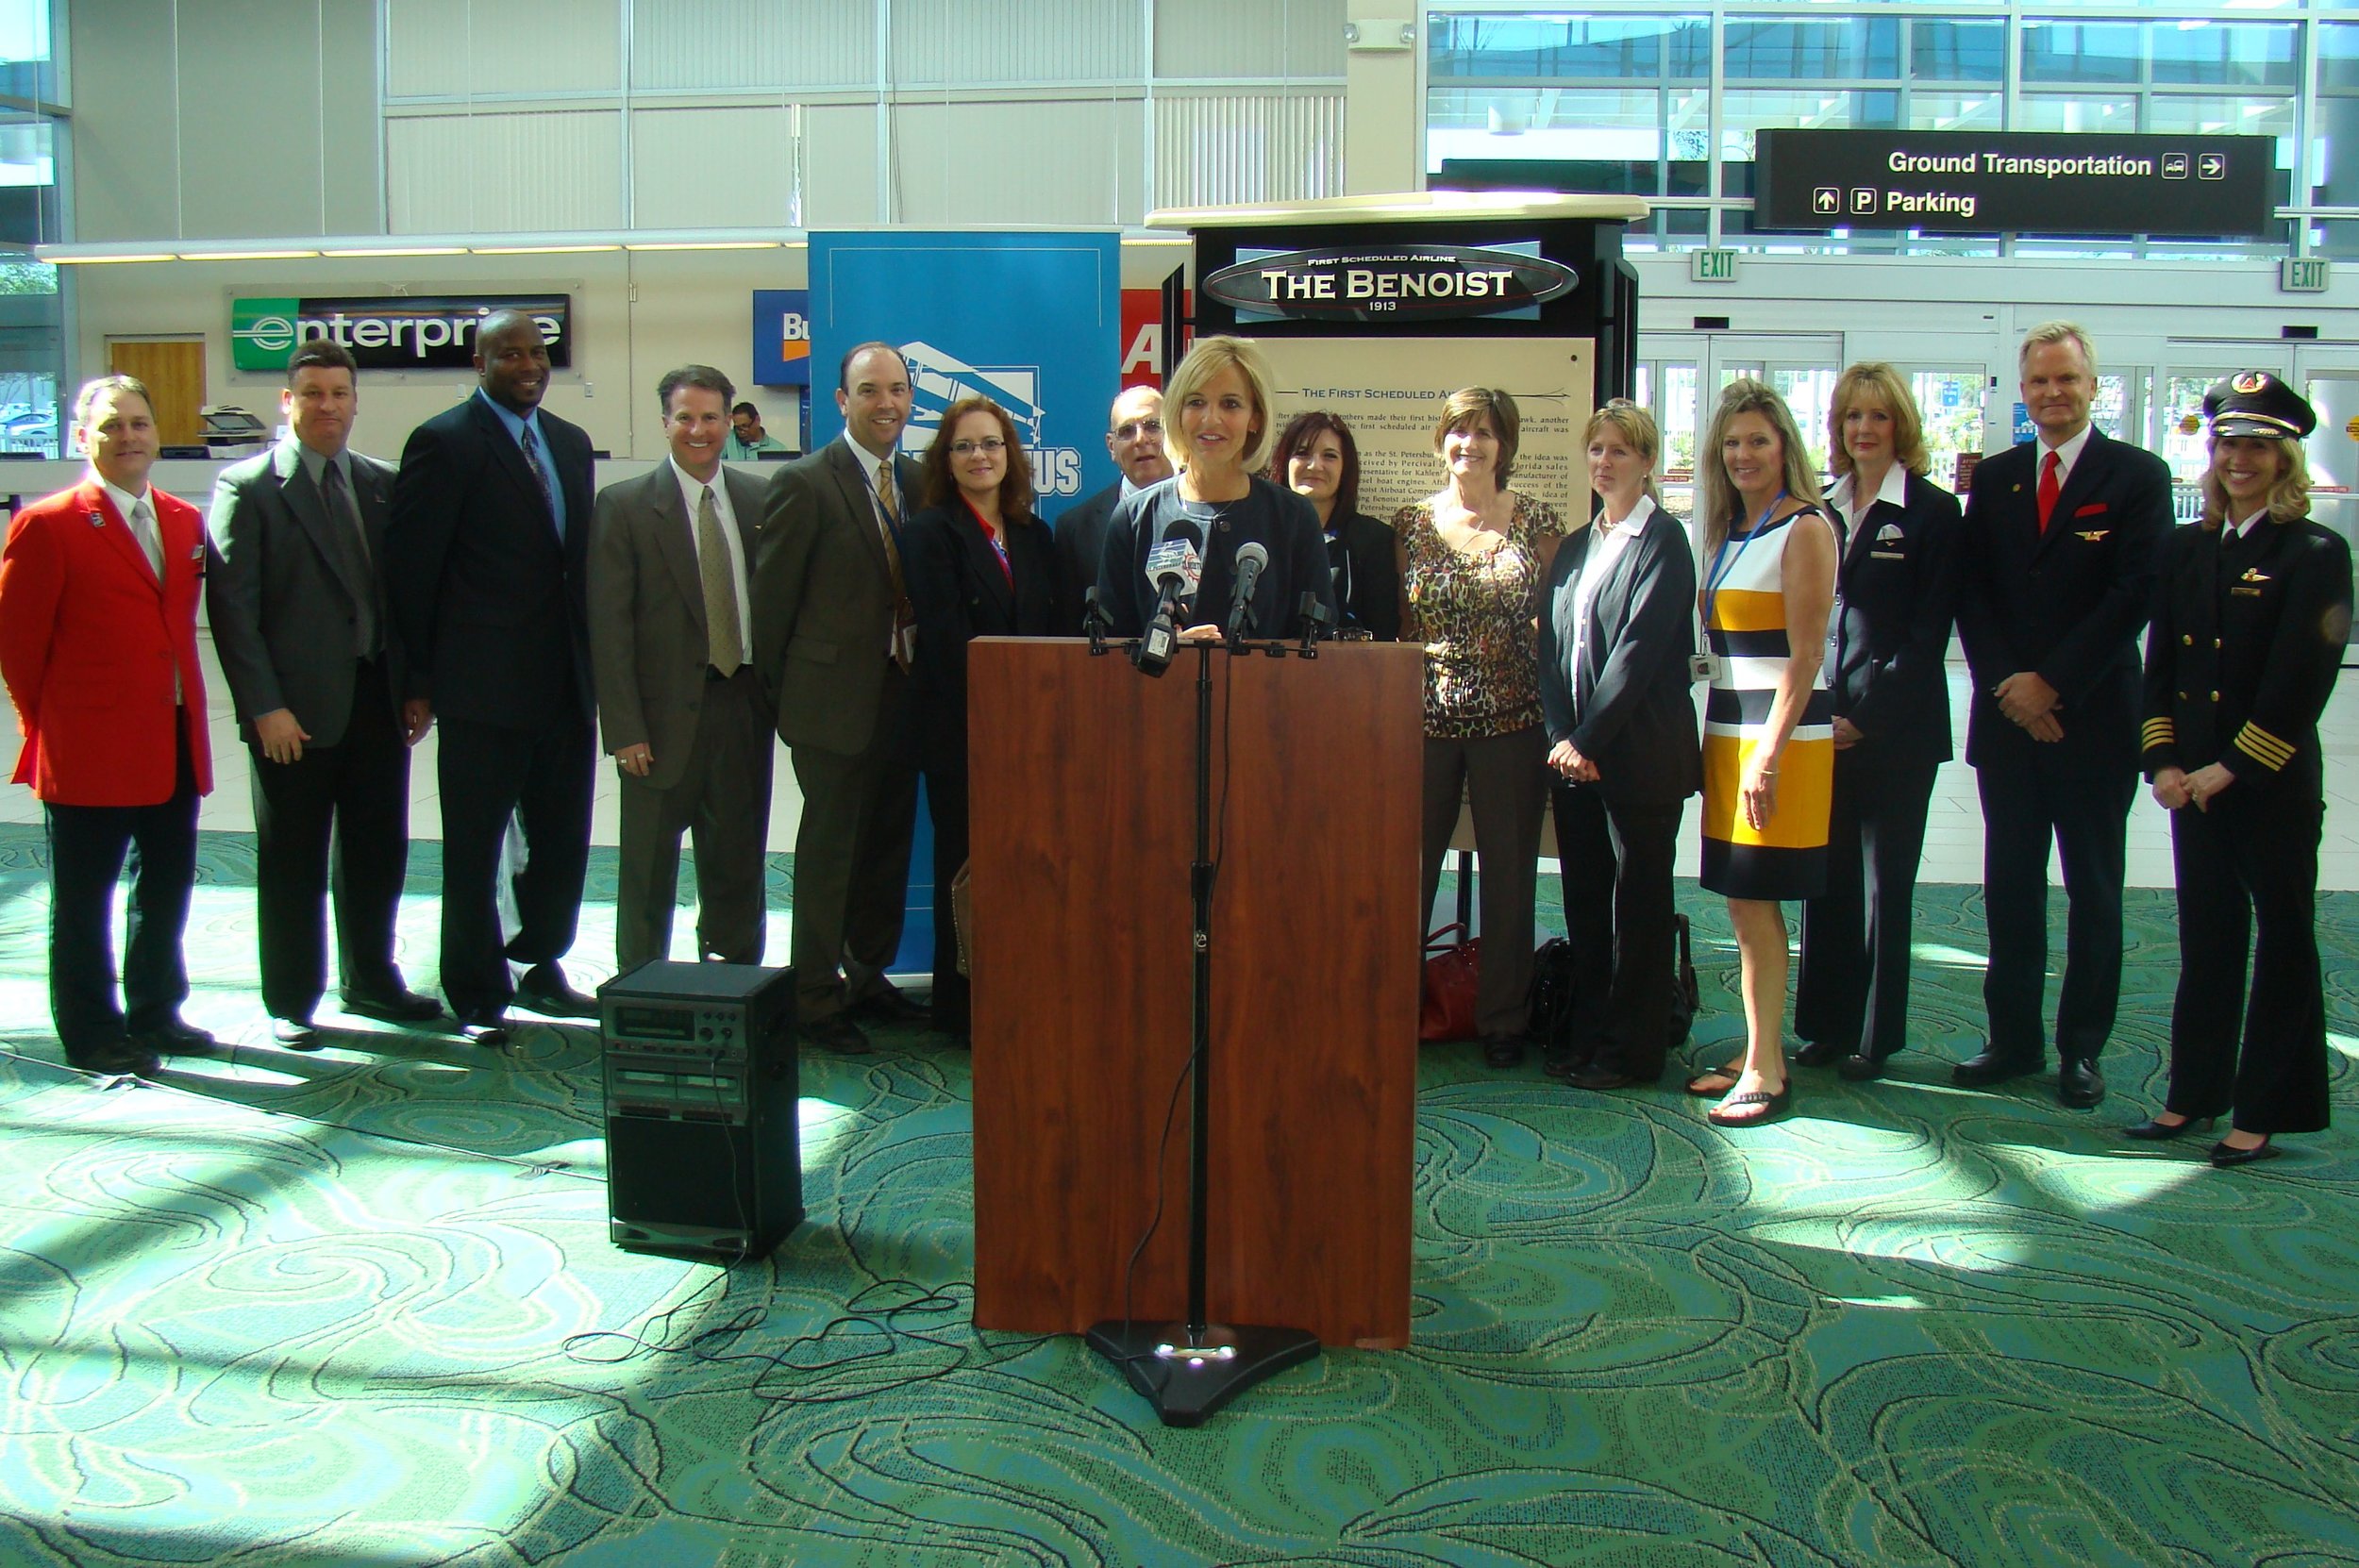 Allison Ausband & Delta Air Line Associates @ PIE Press Conference - 2, 24 Apr '13.JPG